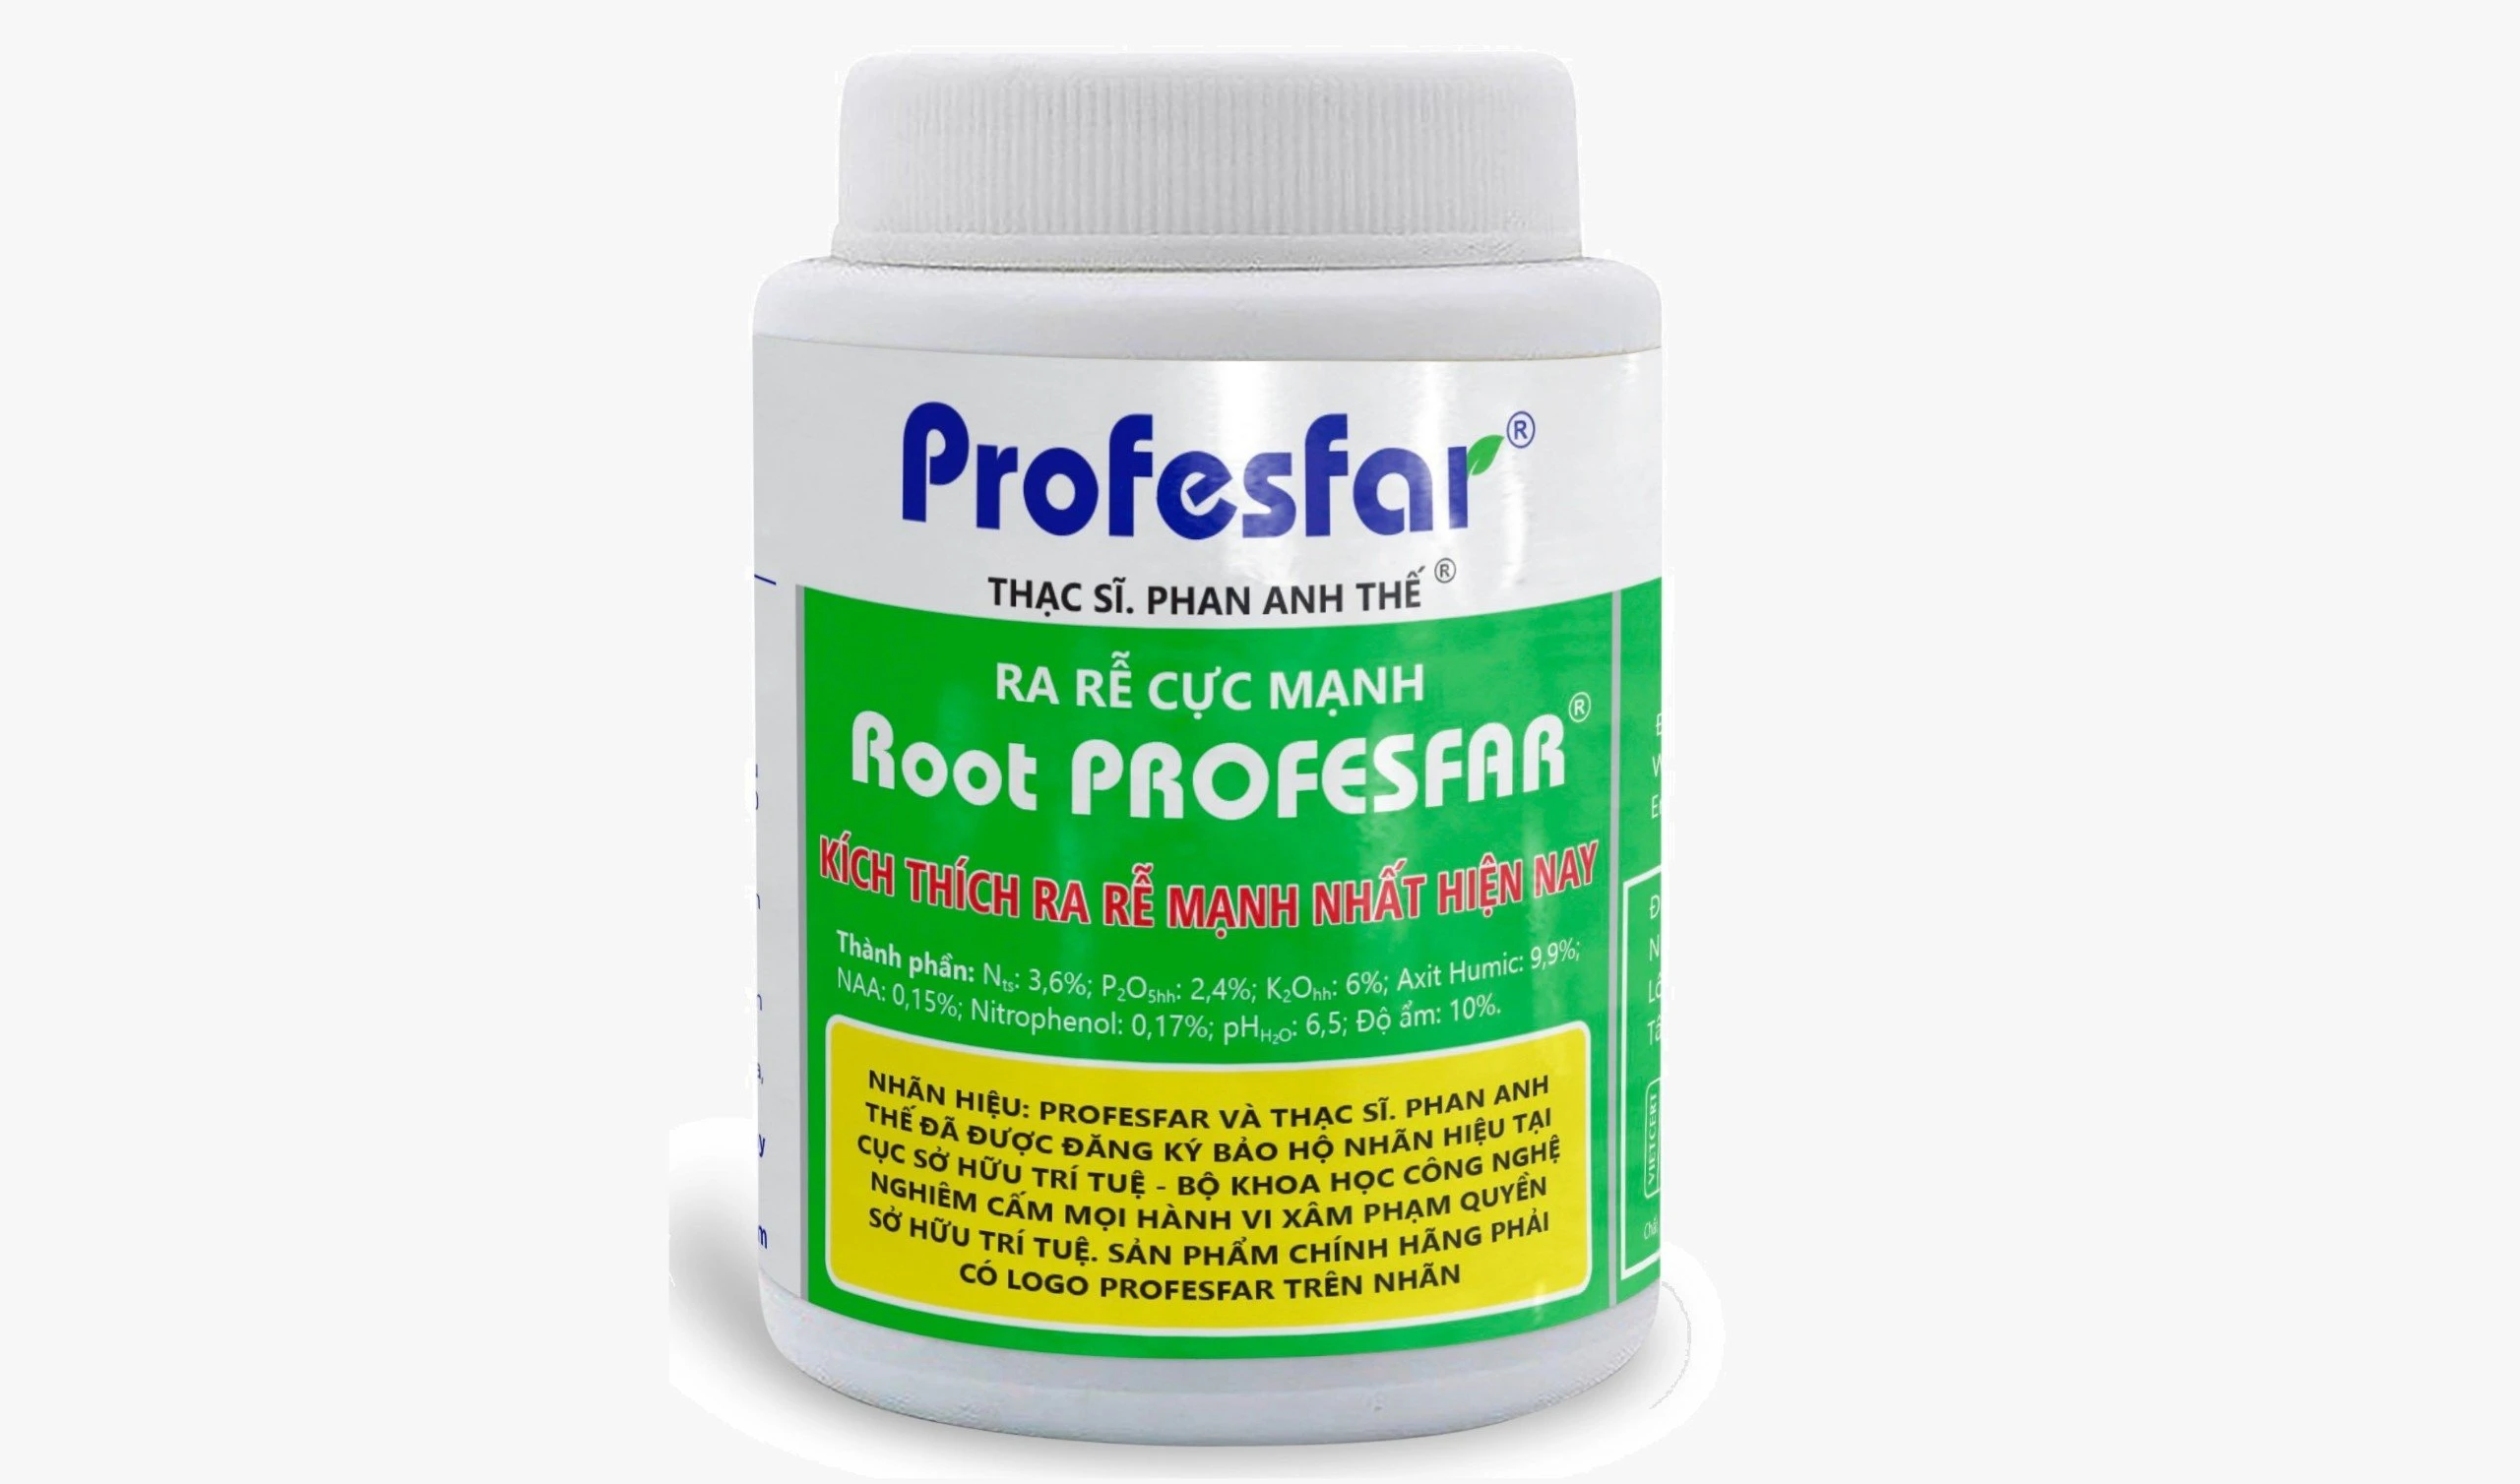 Phân bón sinh học điều hoà sinh trưởng Root PROFESFAR®giúp tái tạo bộ rễ, kích thích sinh trưởng và tăng sức đề kháng cho cây trồng sau mưa úng ngập